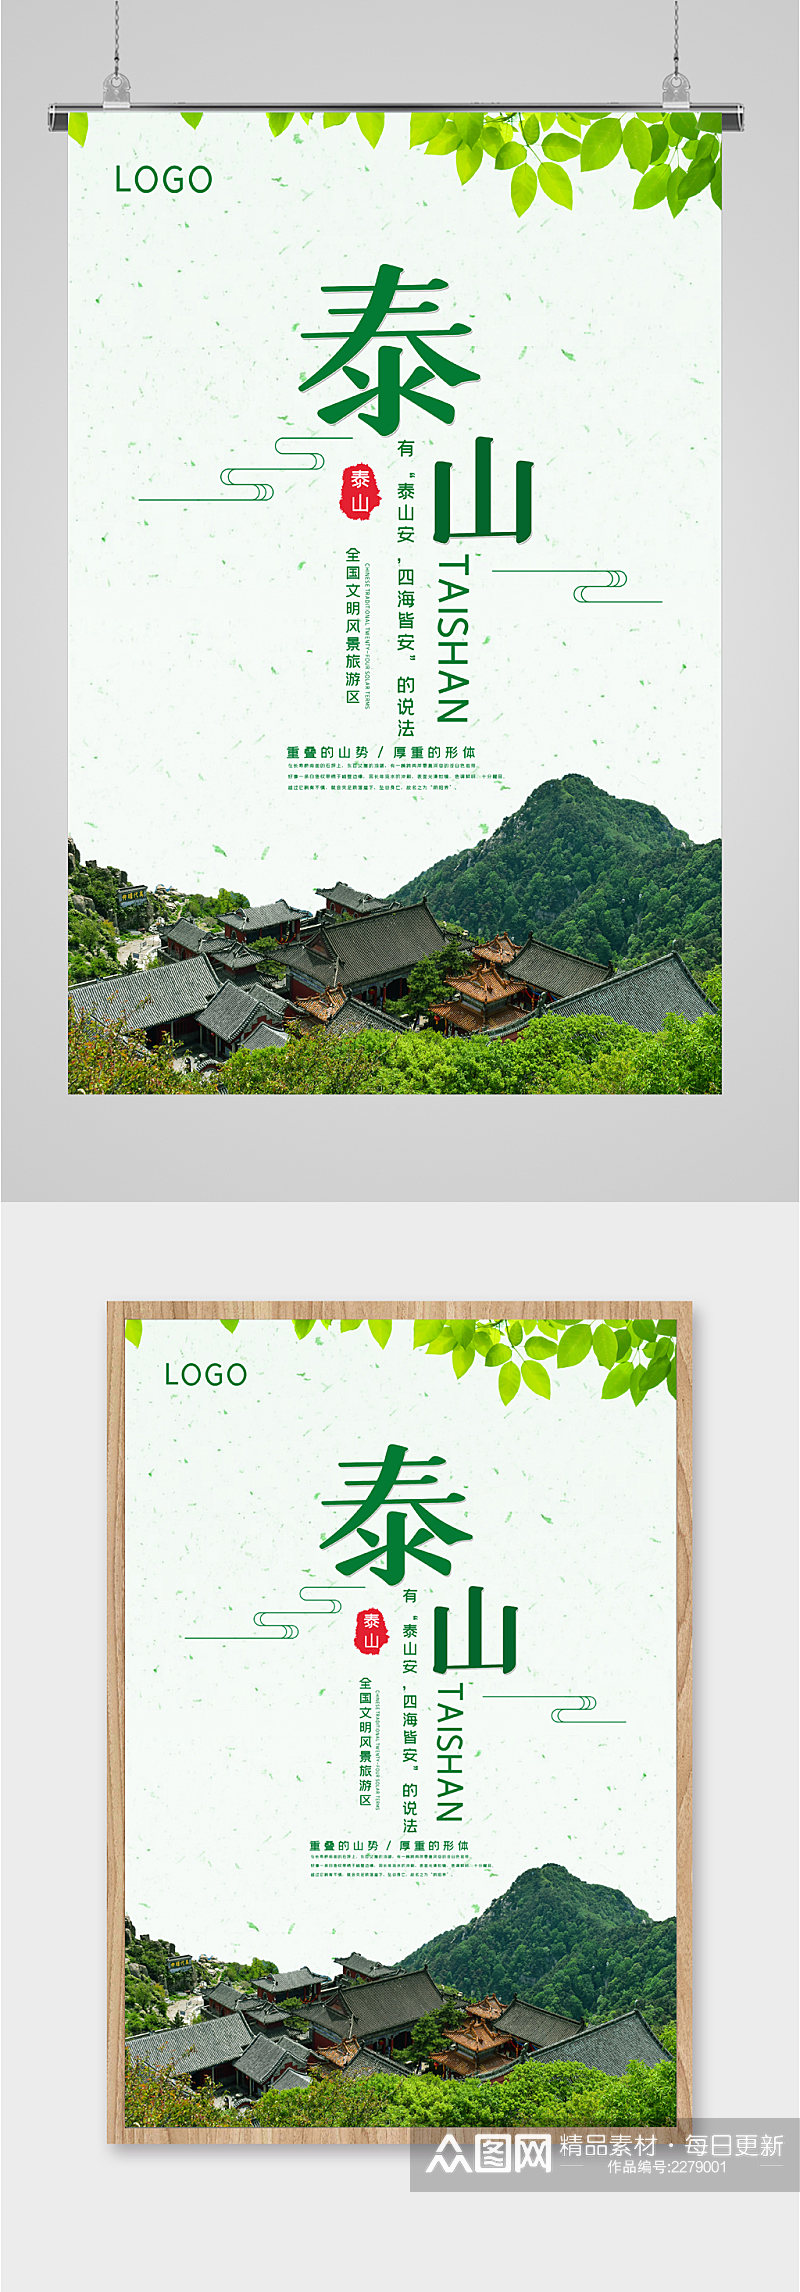 泰山风景旅游区海报素材